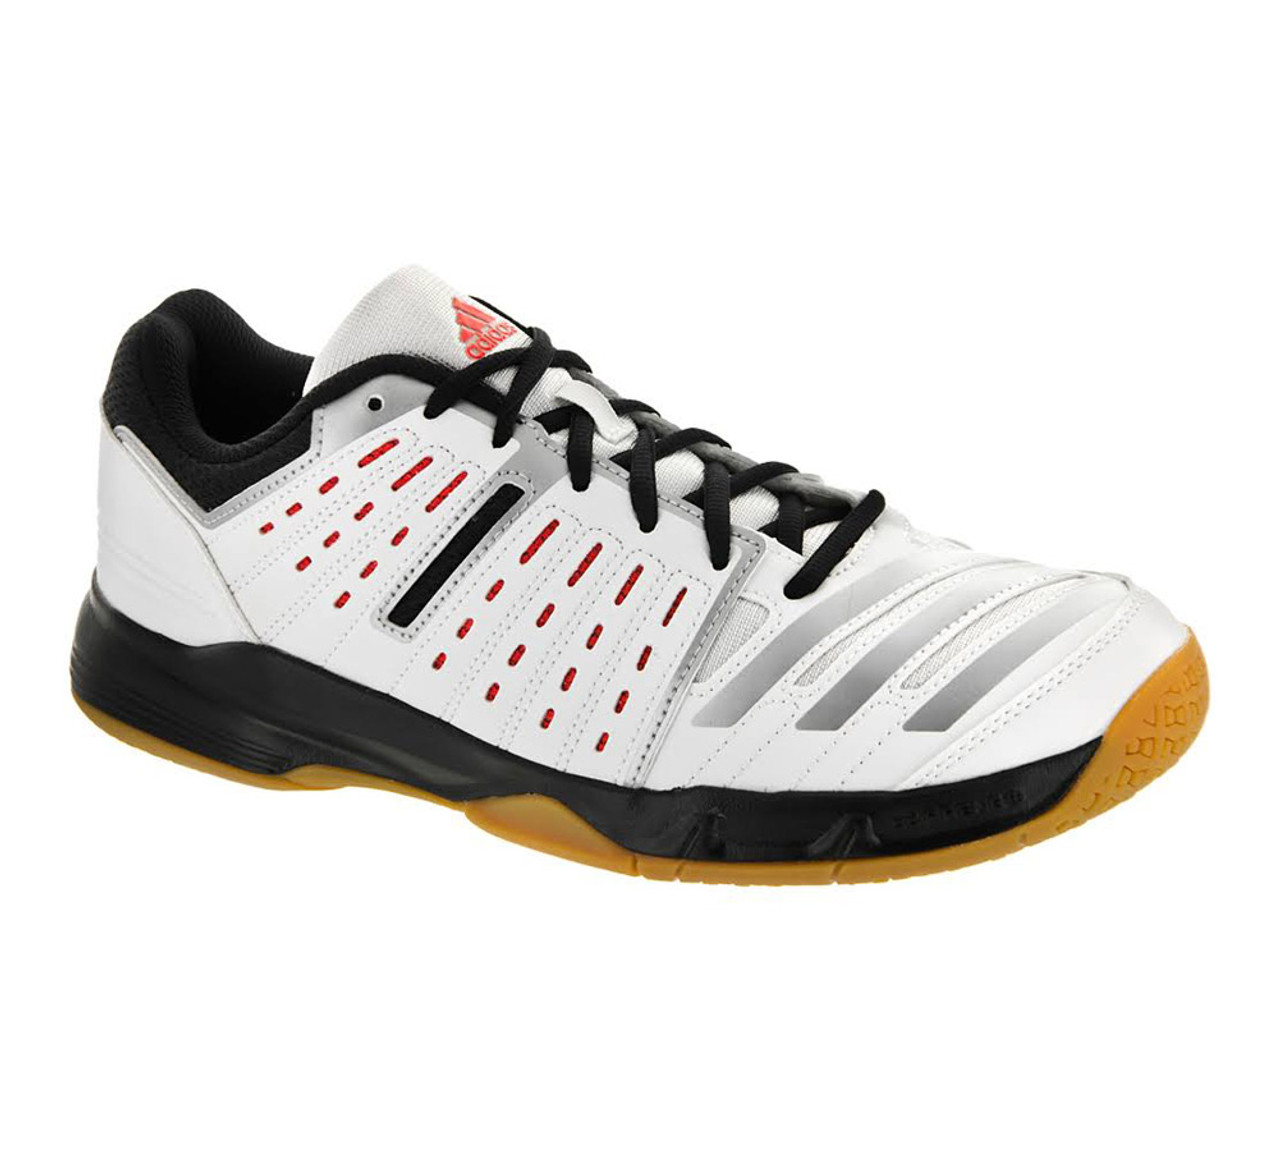 Adidas Men's Essence 12 Handball Shoe - White | Adidas Men's & More - Shoolu.com | Shoolu.com